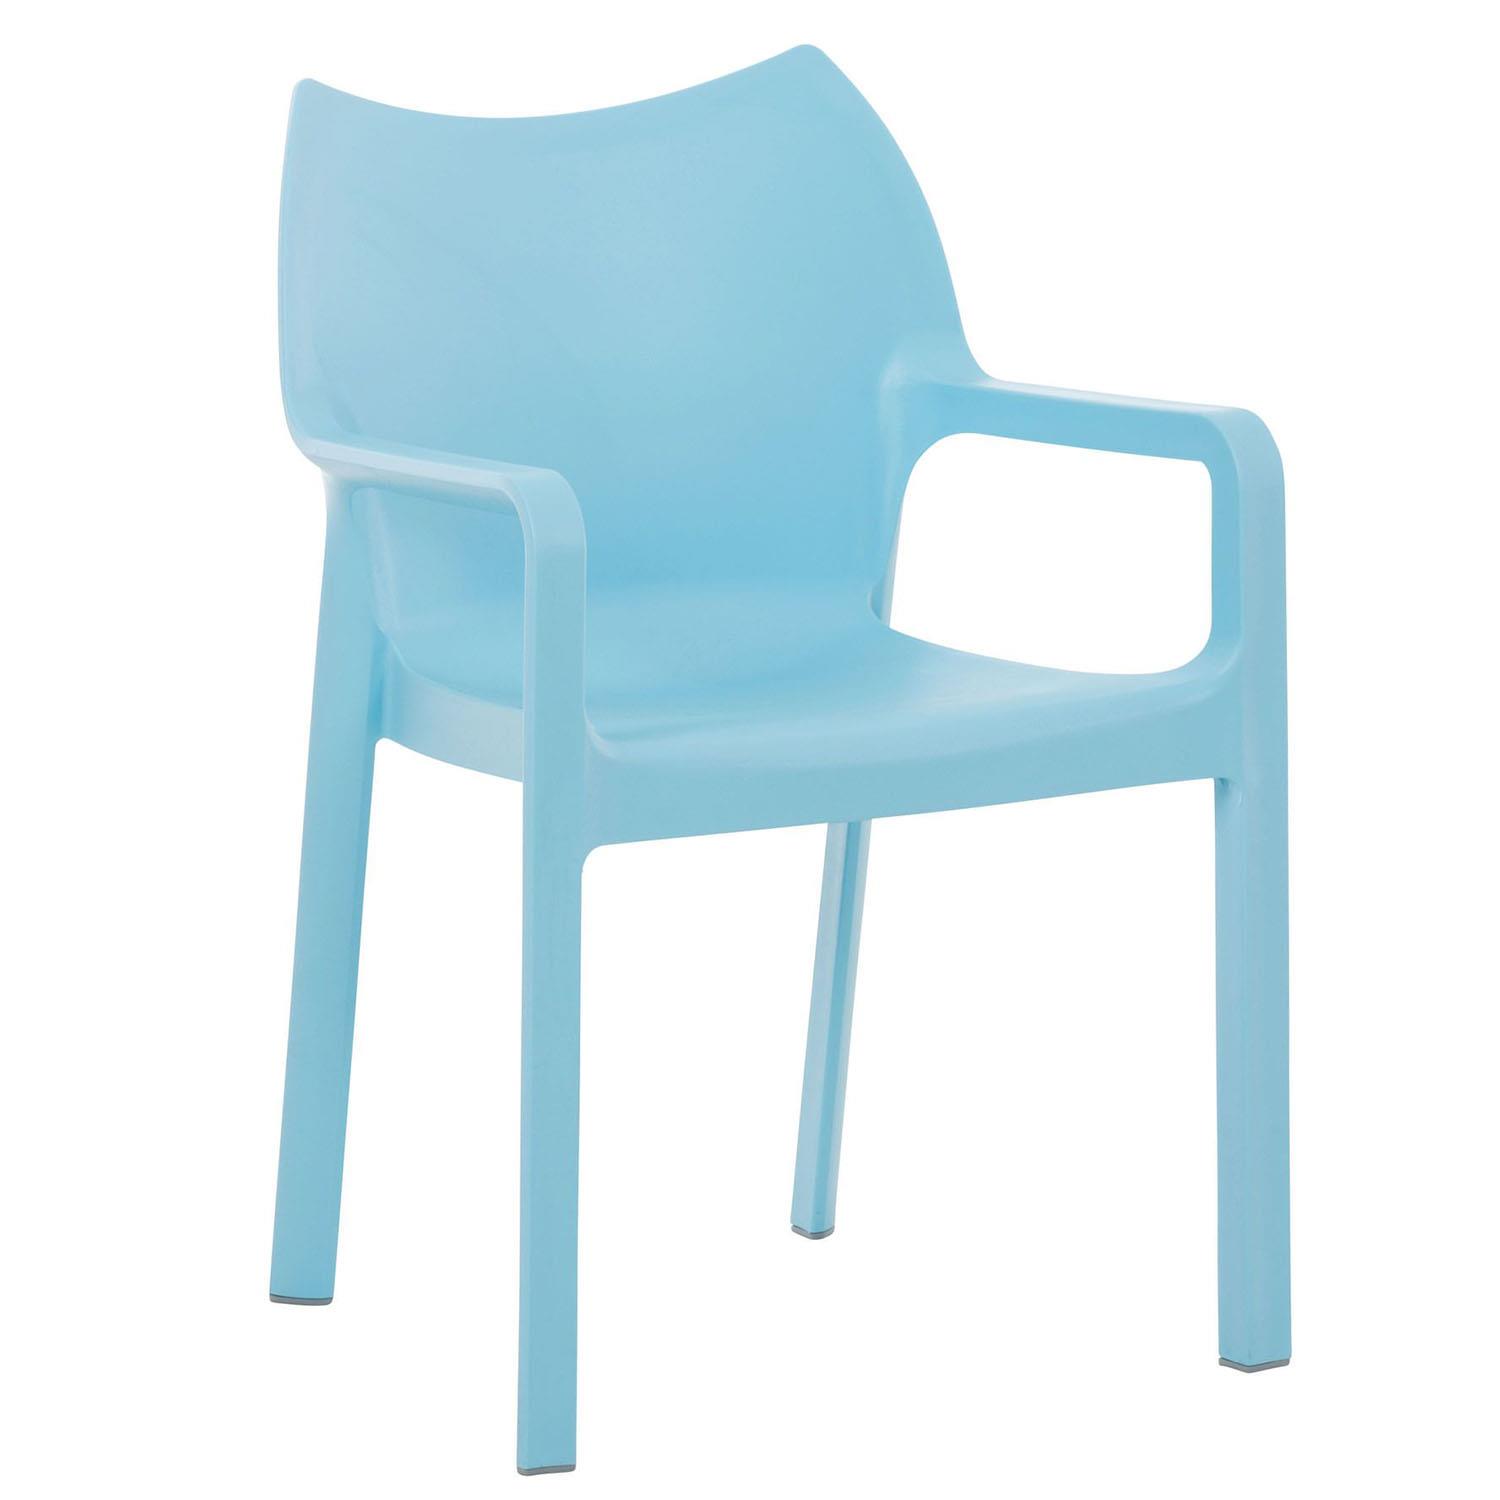 Cadeira de Visita RAMOS, Apoia Braços Integrados, Moderno e Resistente, Cor Azul